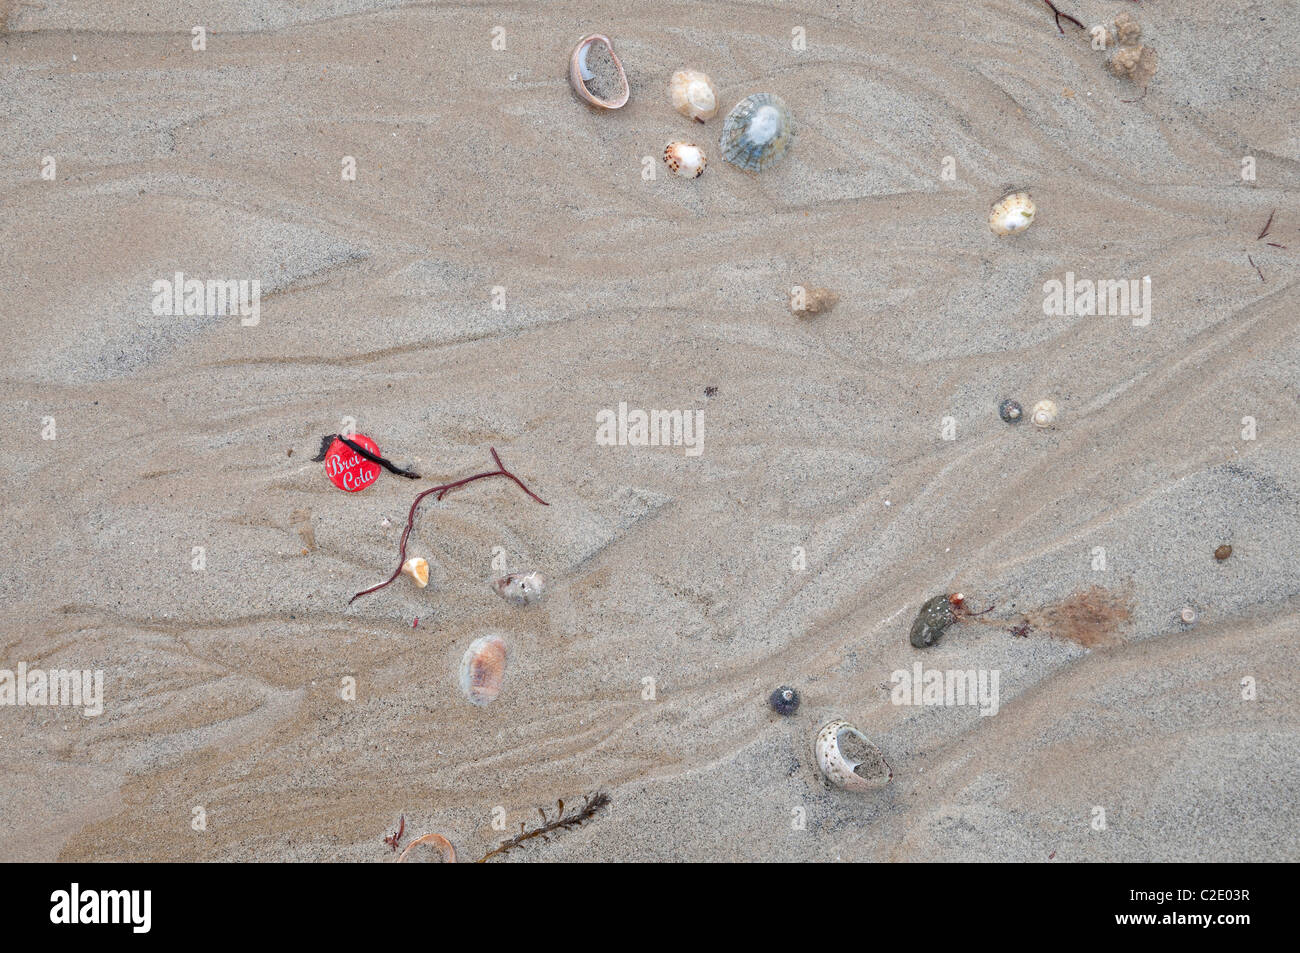 bouchon de Breitz cola, coquillages, algues sur une plage de sable shellfish, seaweed on a beach Stock Photo